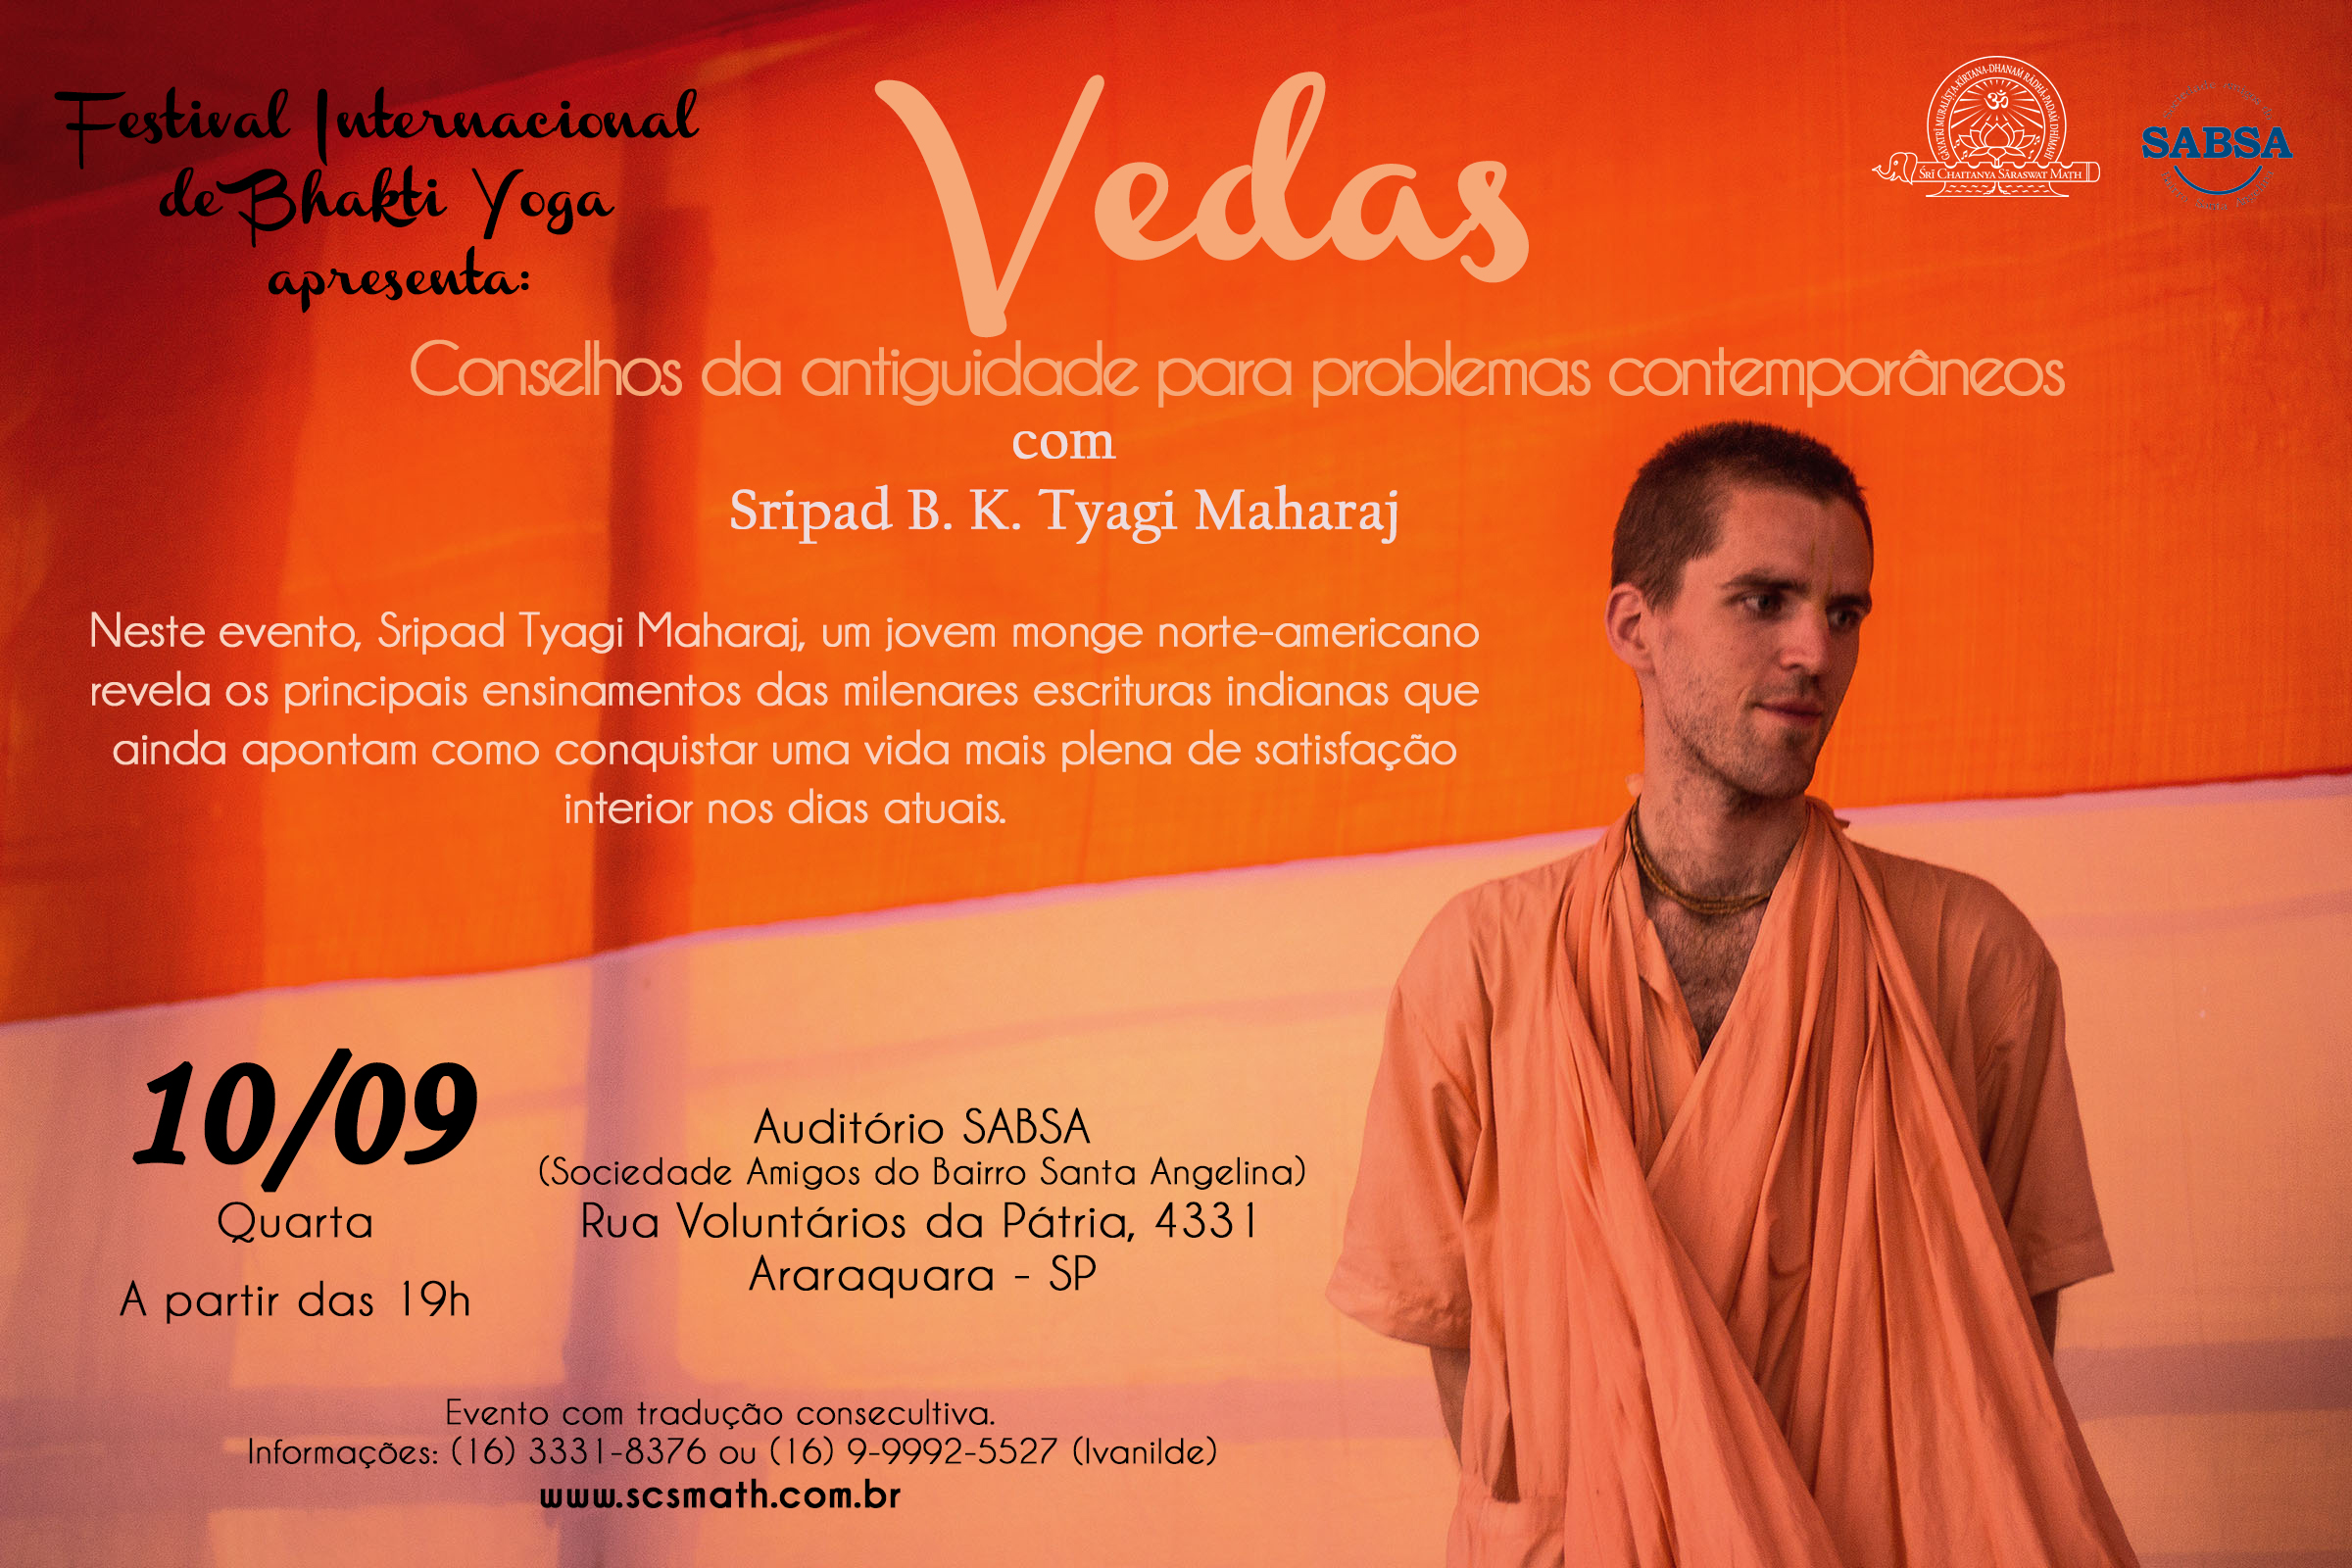 Evento – Festival Internacional de Bhakti Yoga – Vedas